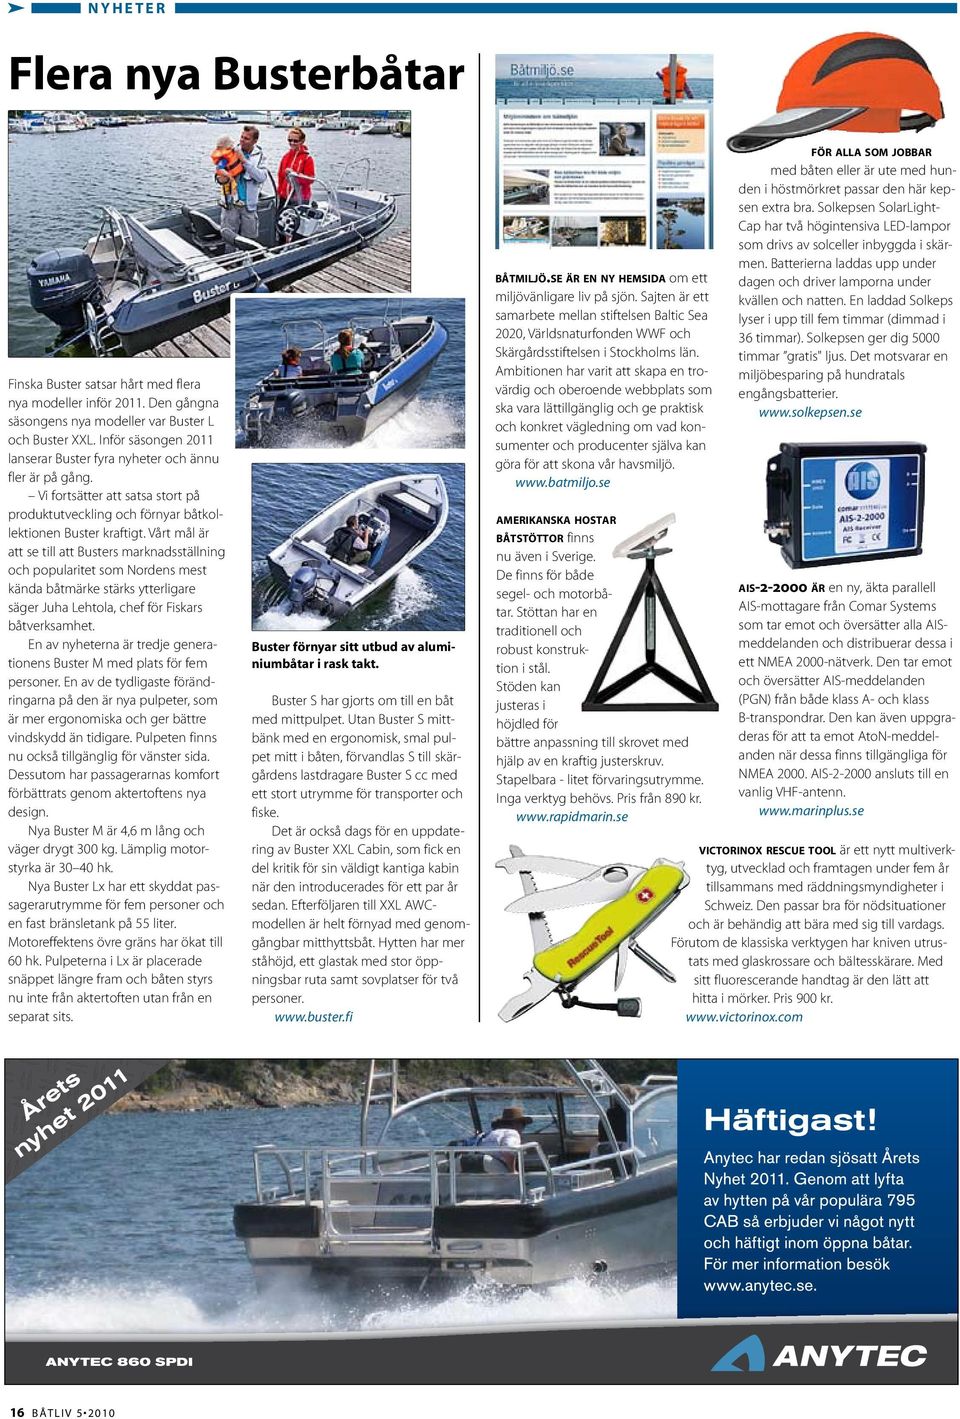 Vårt mål är att se till att Busters marknadsställning och popularitet som Nordens mest kända båtmärke stärks ytterligare säger Juha Lehtola, chef för Fiskars båtverksamhet.